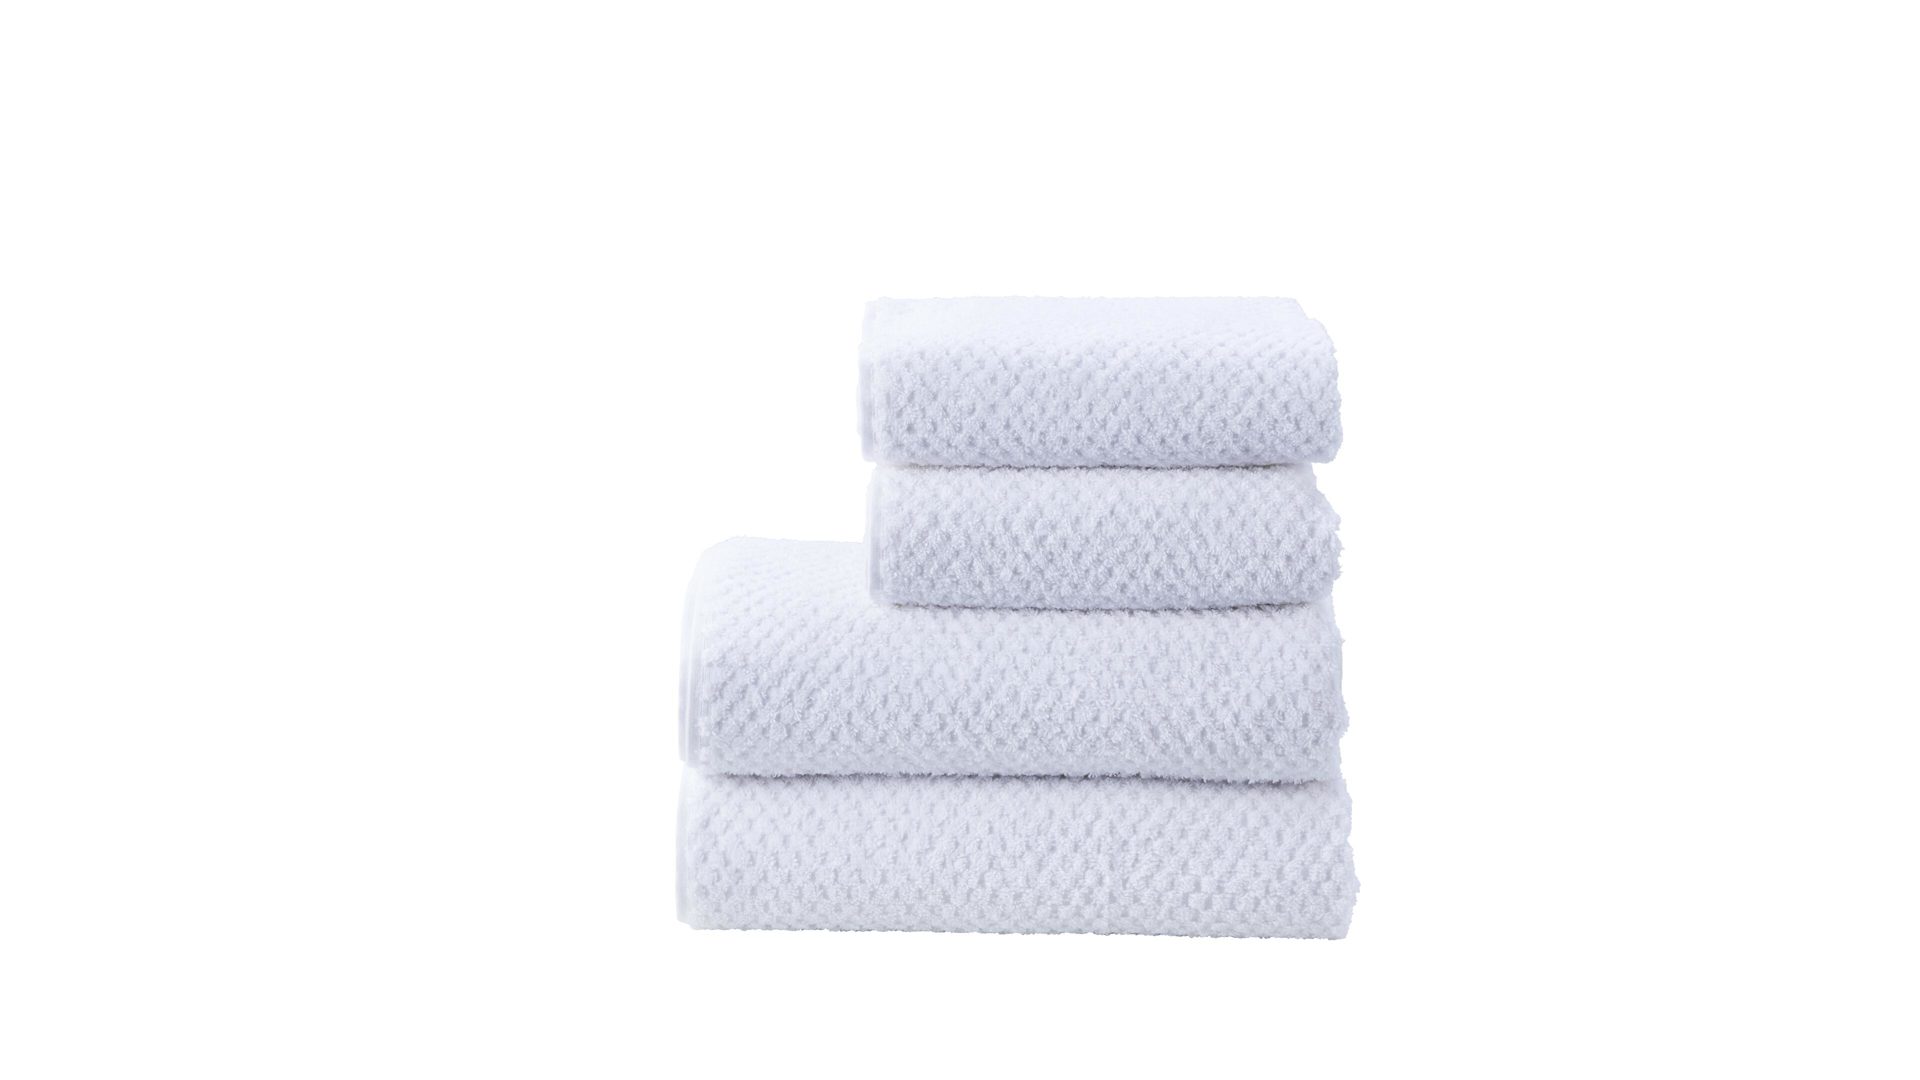 Handtuch-Set Done® be different aus Stoff in Weiß  DONE®Handtuch-Set Provence Honeycomb weiße Baumwolle  – vierteilig